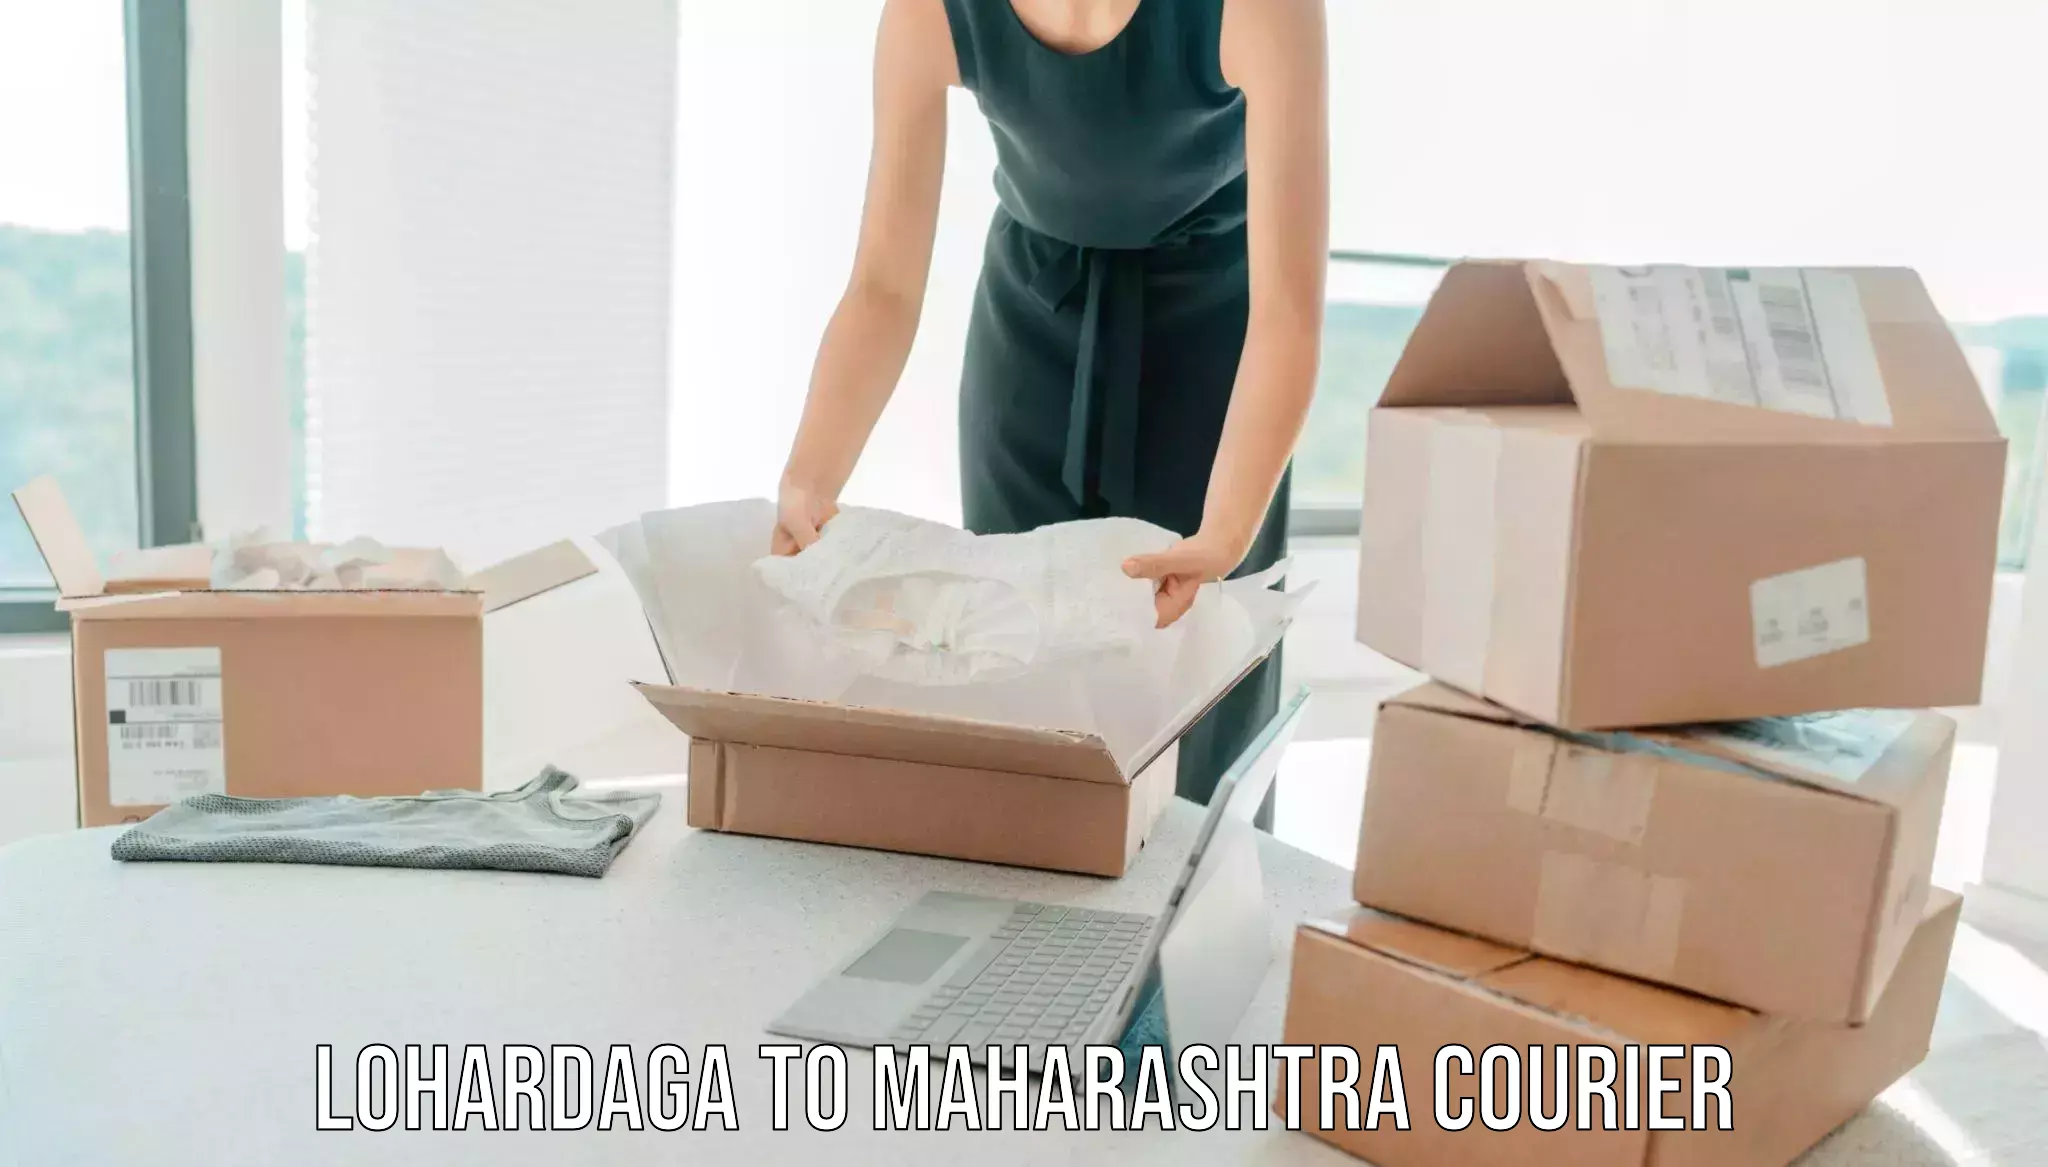 Efficient moving company Lohardaga to Maharashtra